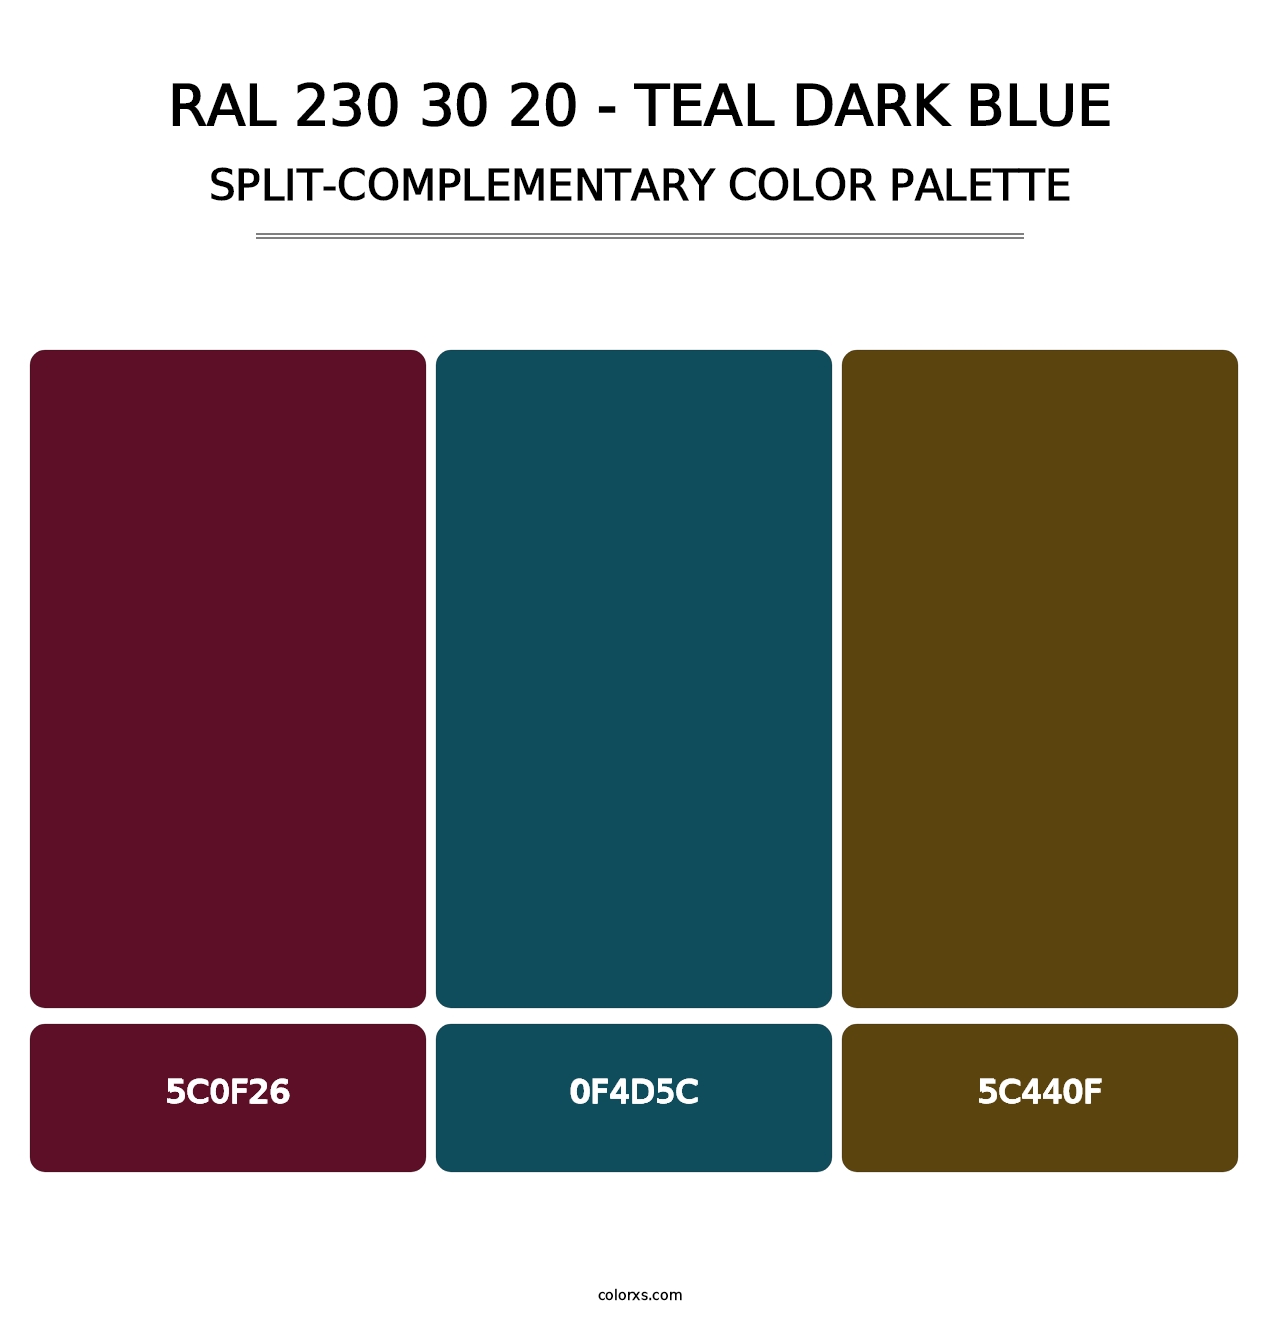 RAL 230 30 20 - Teal Dark Blue - Split-Complementary Color Palette